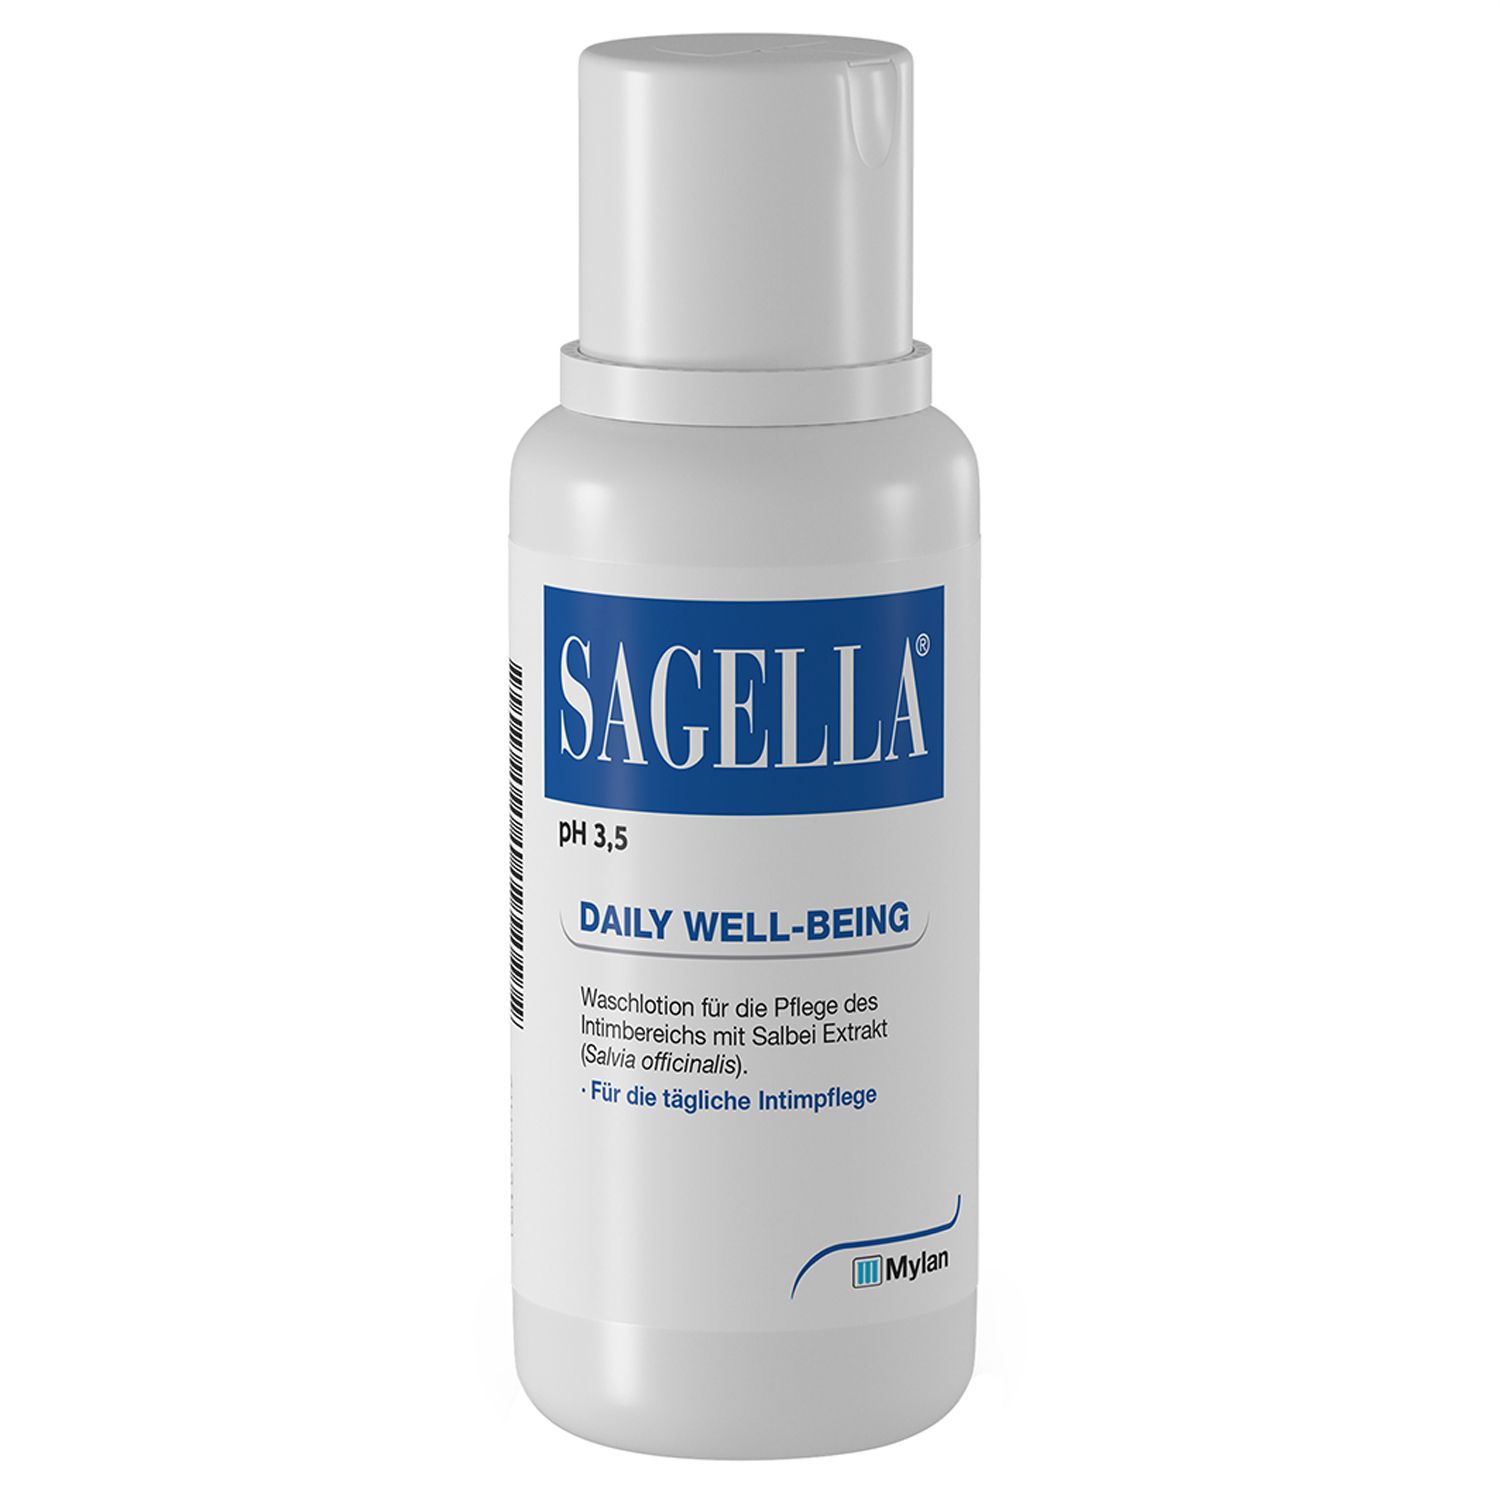 Sagella® pH 3,5 Daily Well-Being - Intimwaschlotion